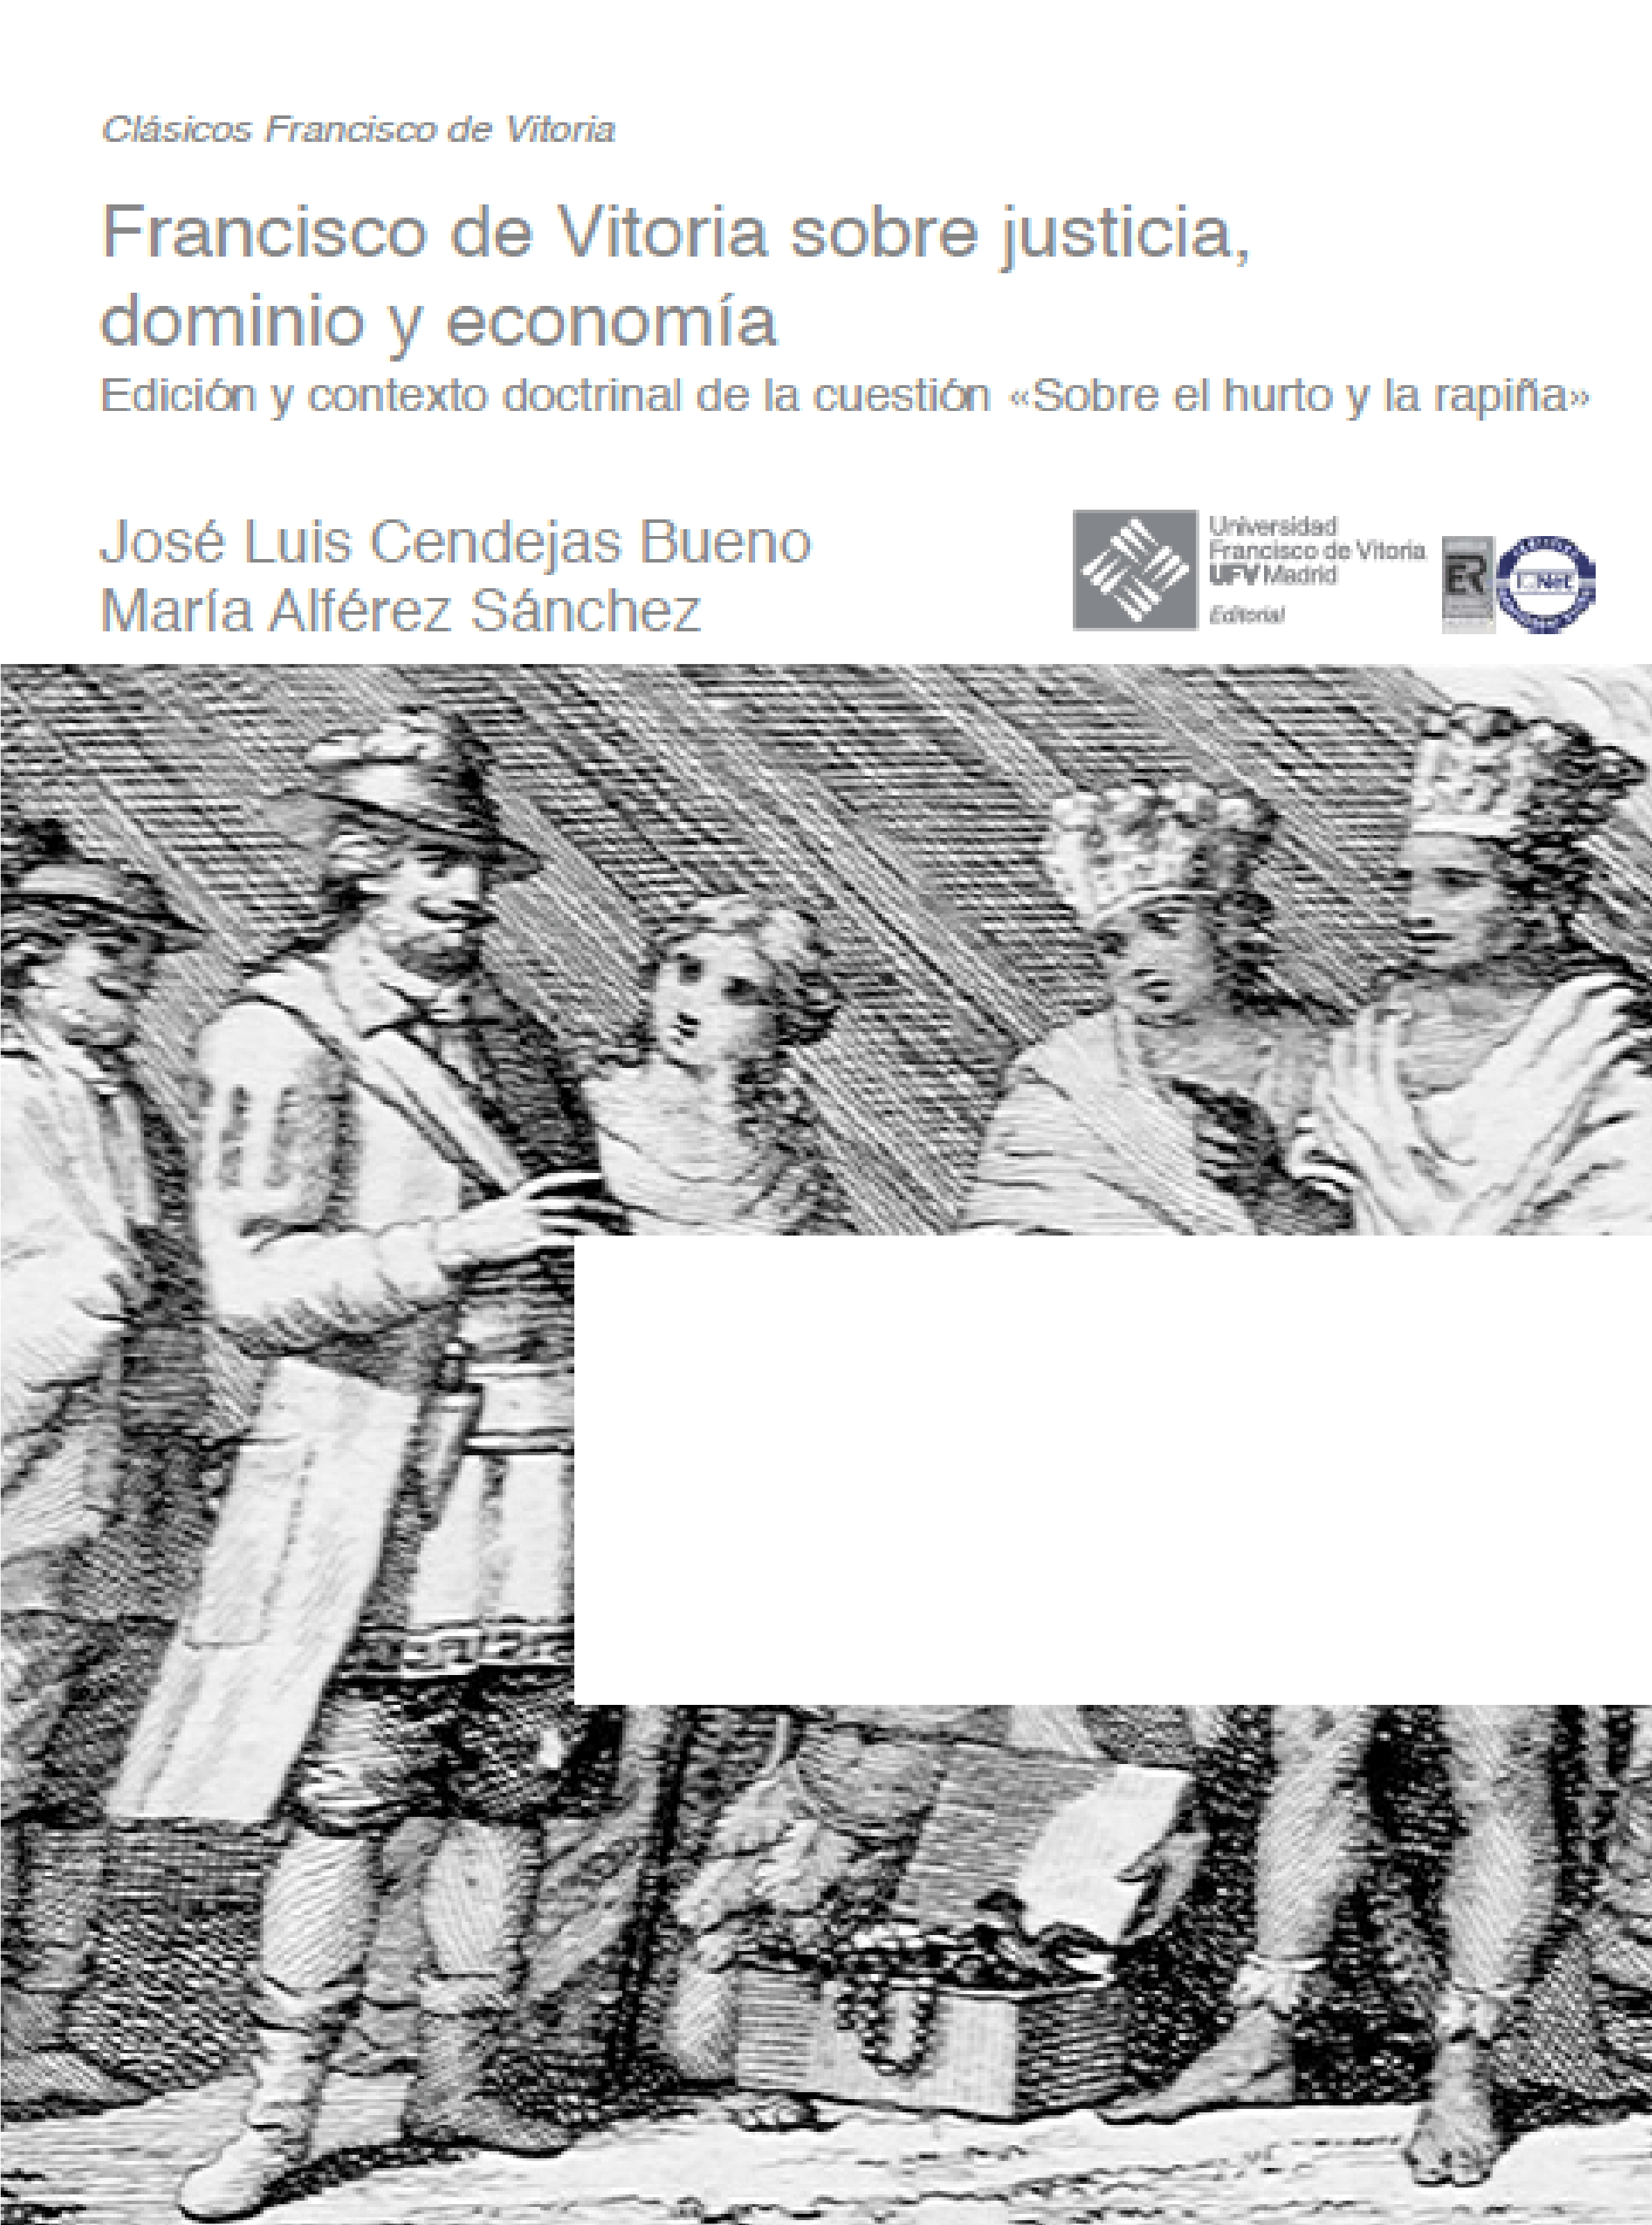 Imagen de portada del libro Francisco de Vitoria sobre justicia, dominio y economía